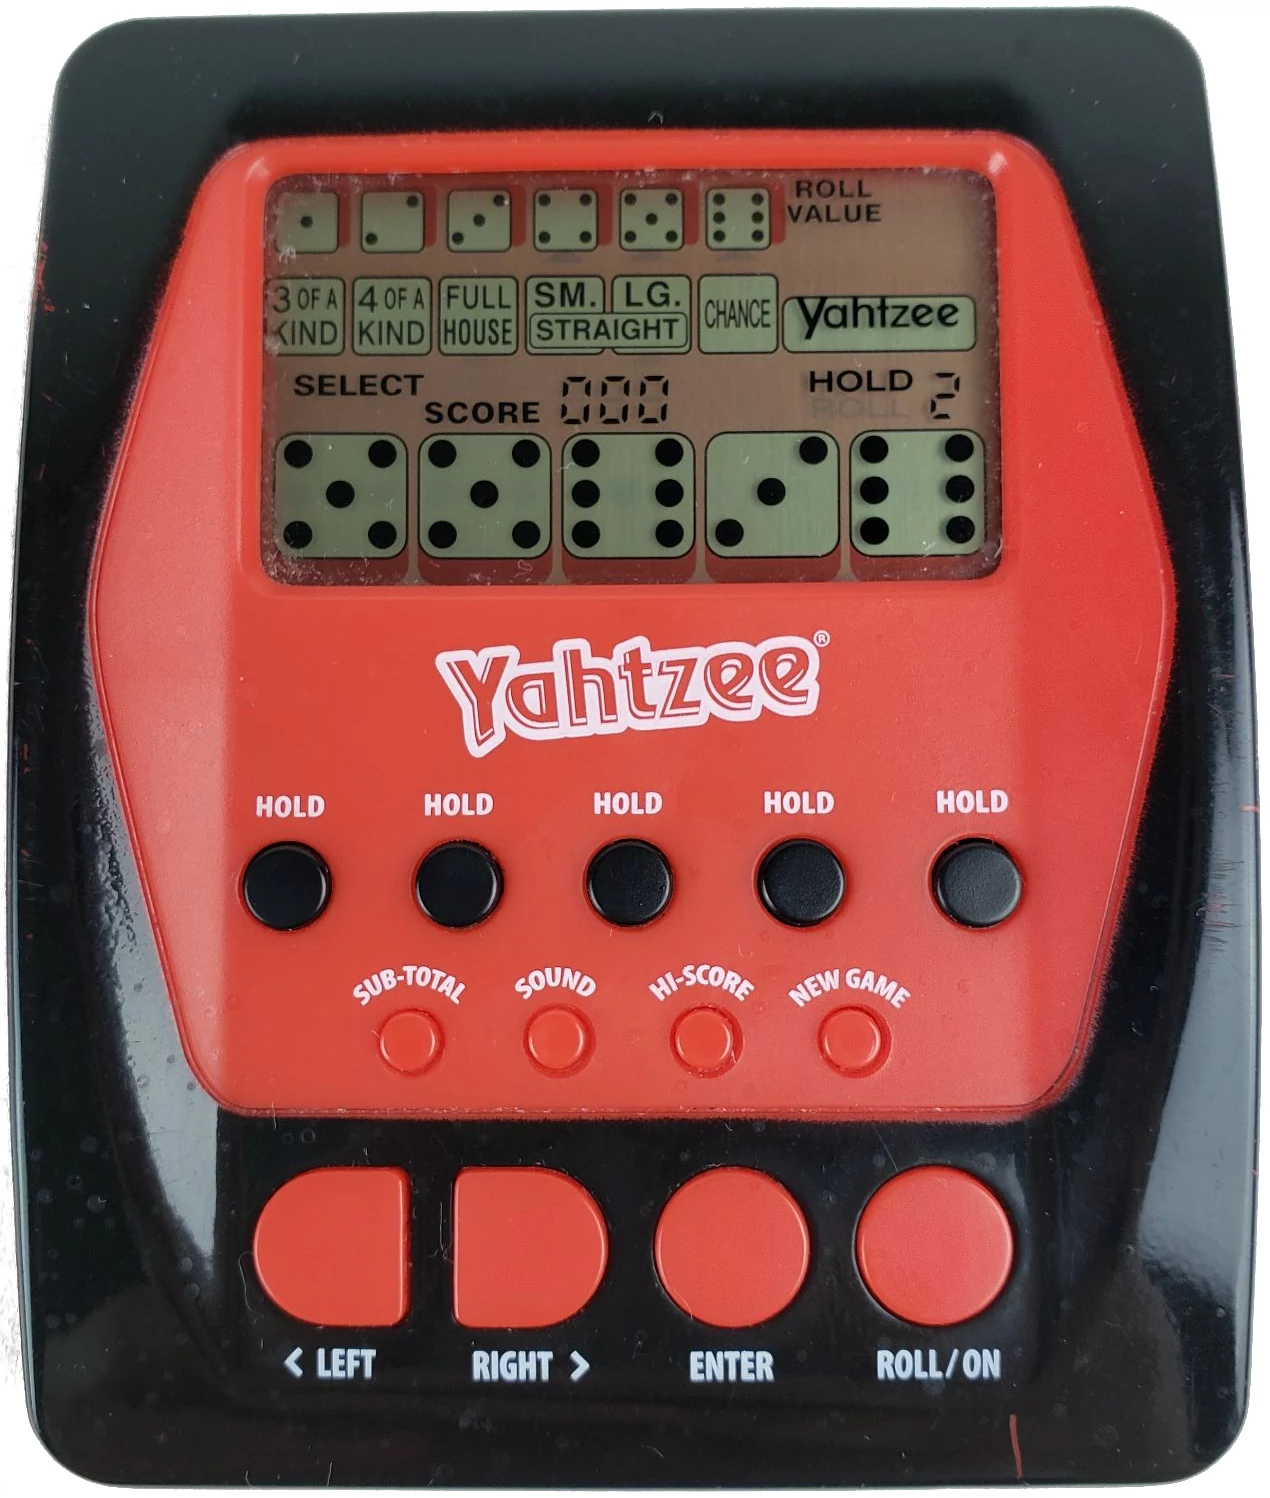 2012 Handheld Electronic Yahtzee